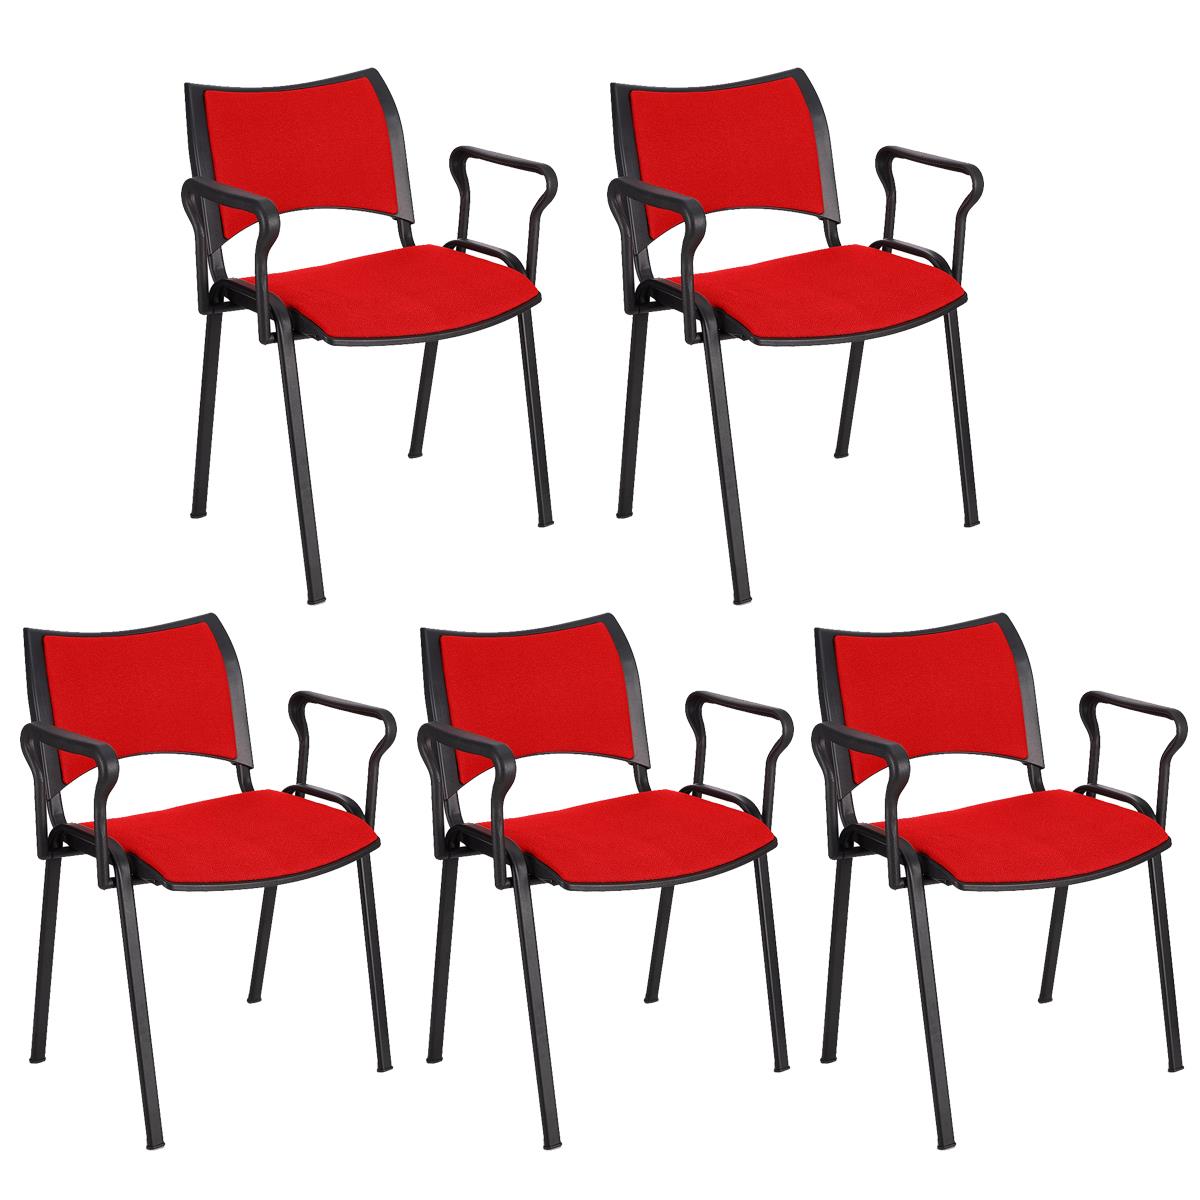 Lote 5 Cadeiras de Visita ROMEL COM BRAÇOS, Empilhável, Pernas Pretas, Em Pano, Vermelho